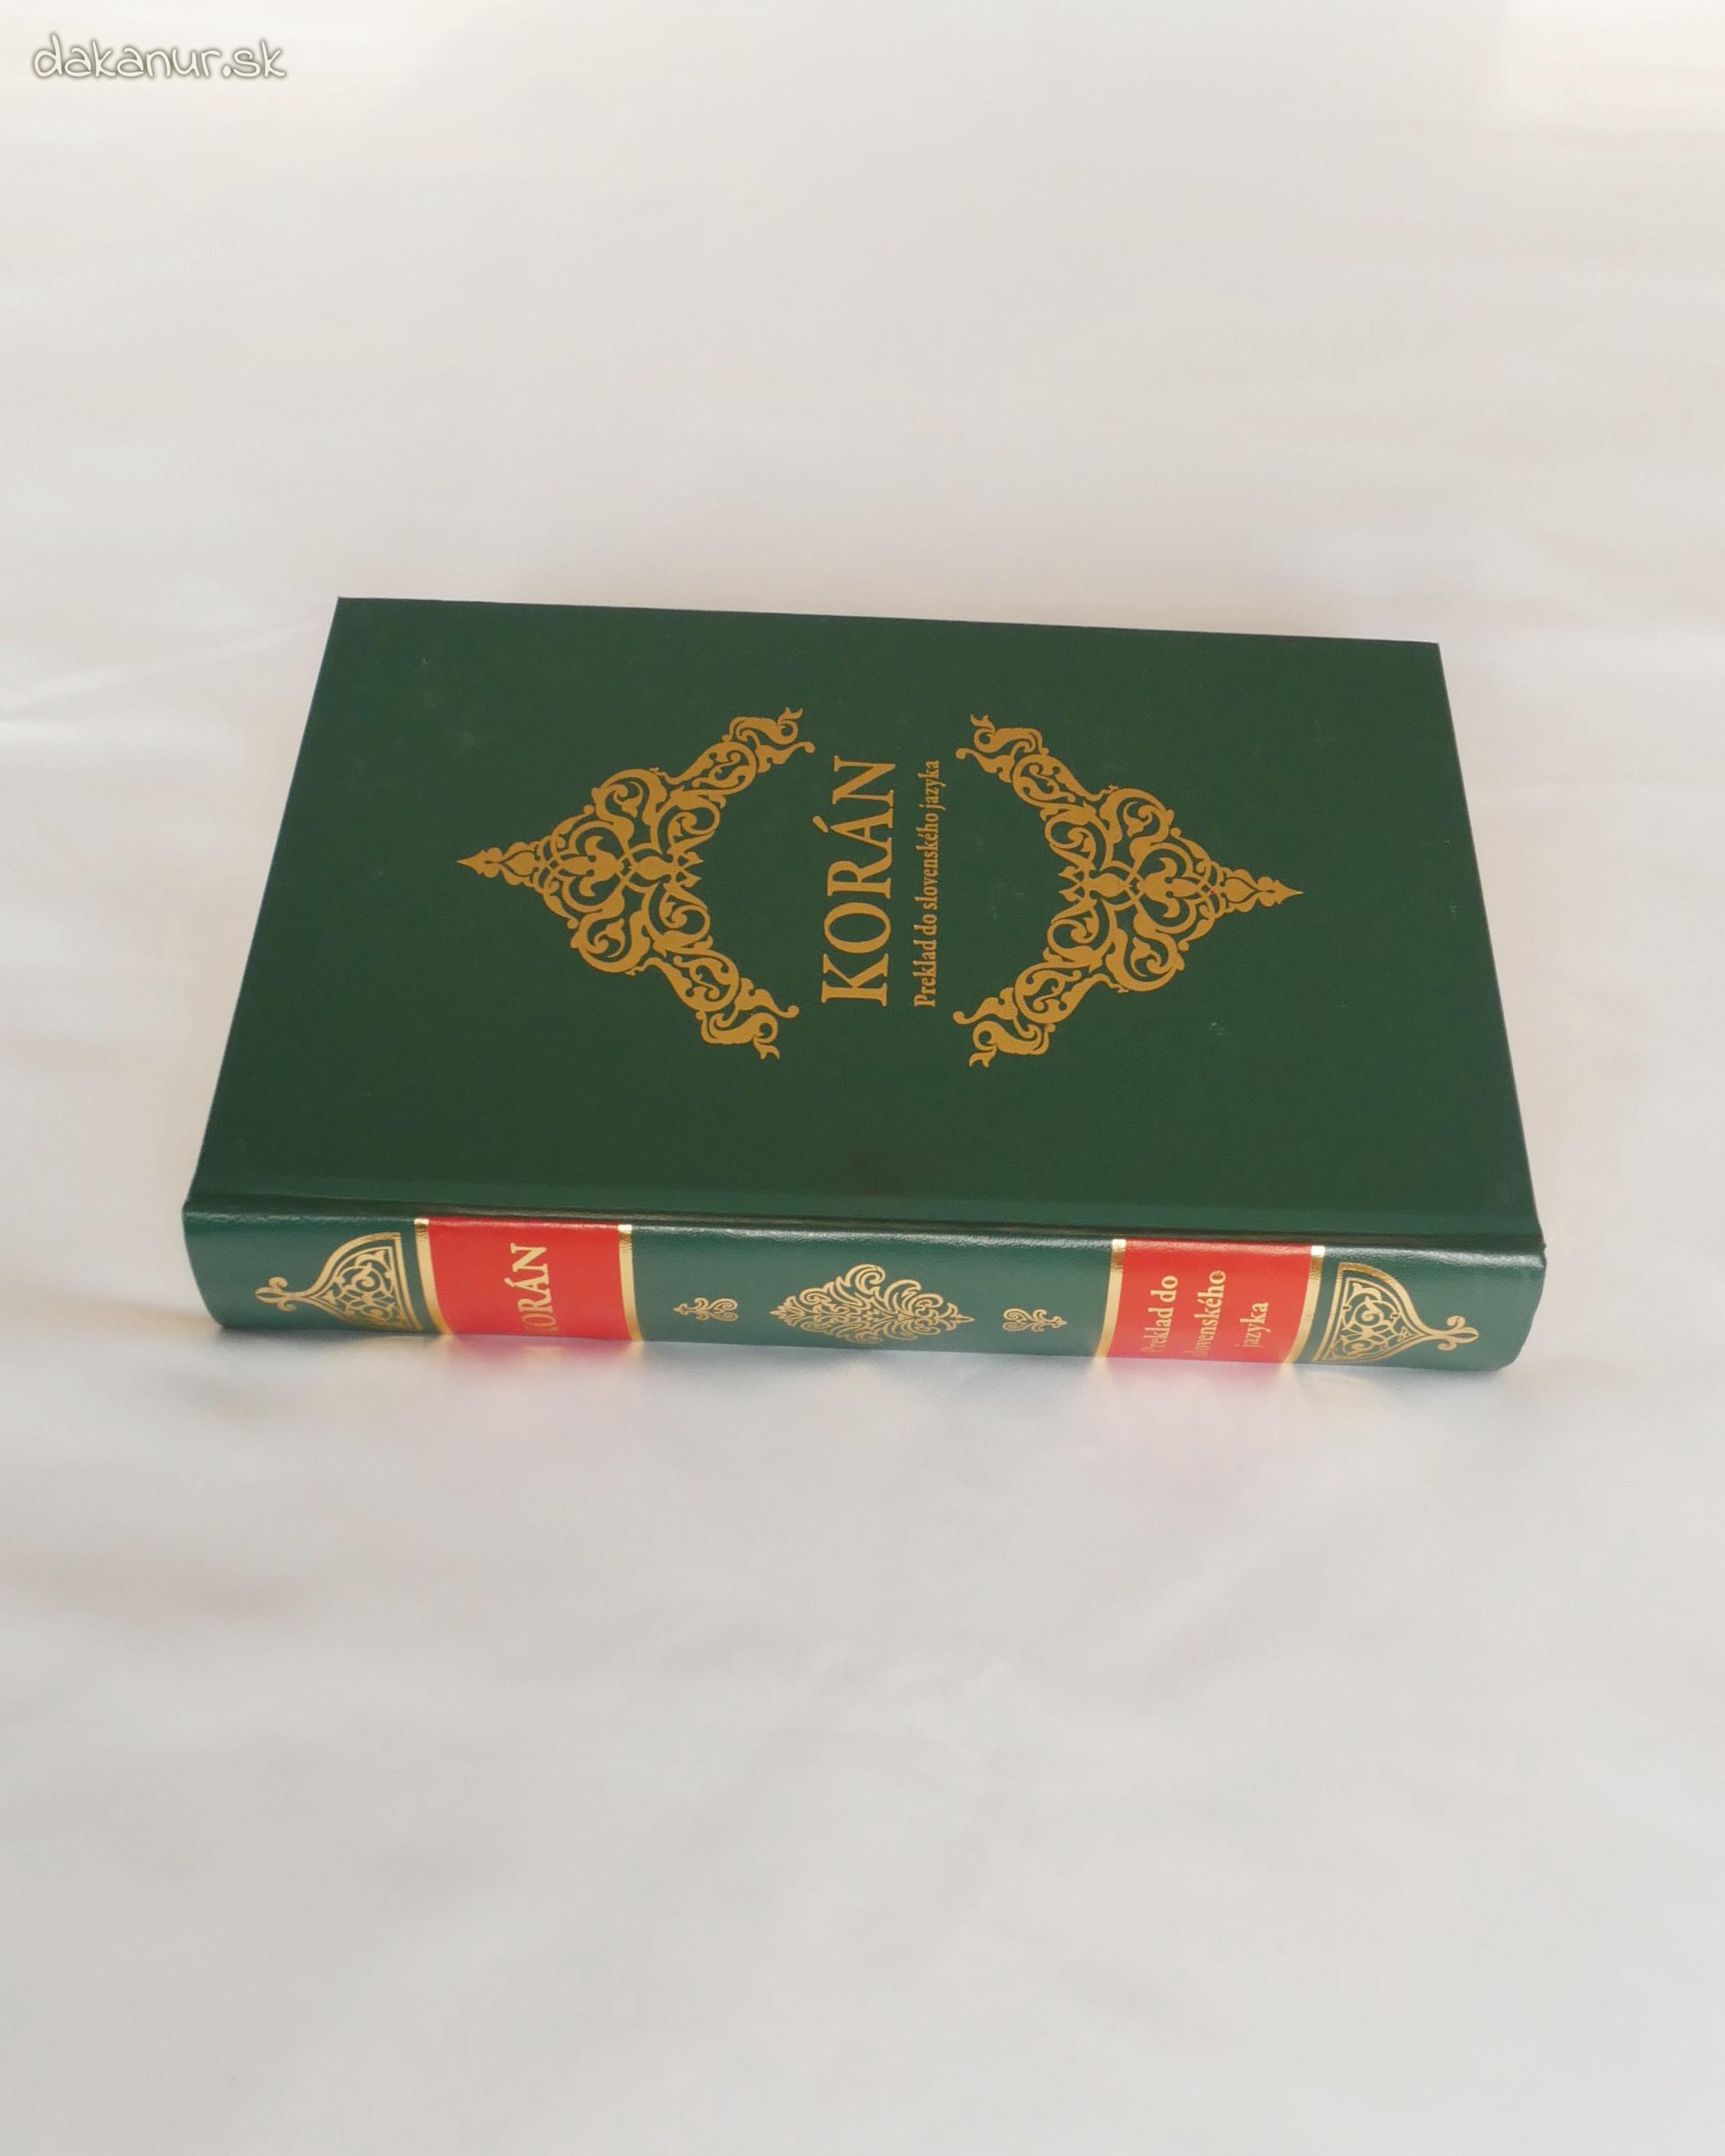 Korán v slovenskom-arabskom jazyku, zelený